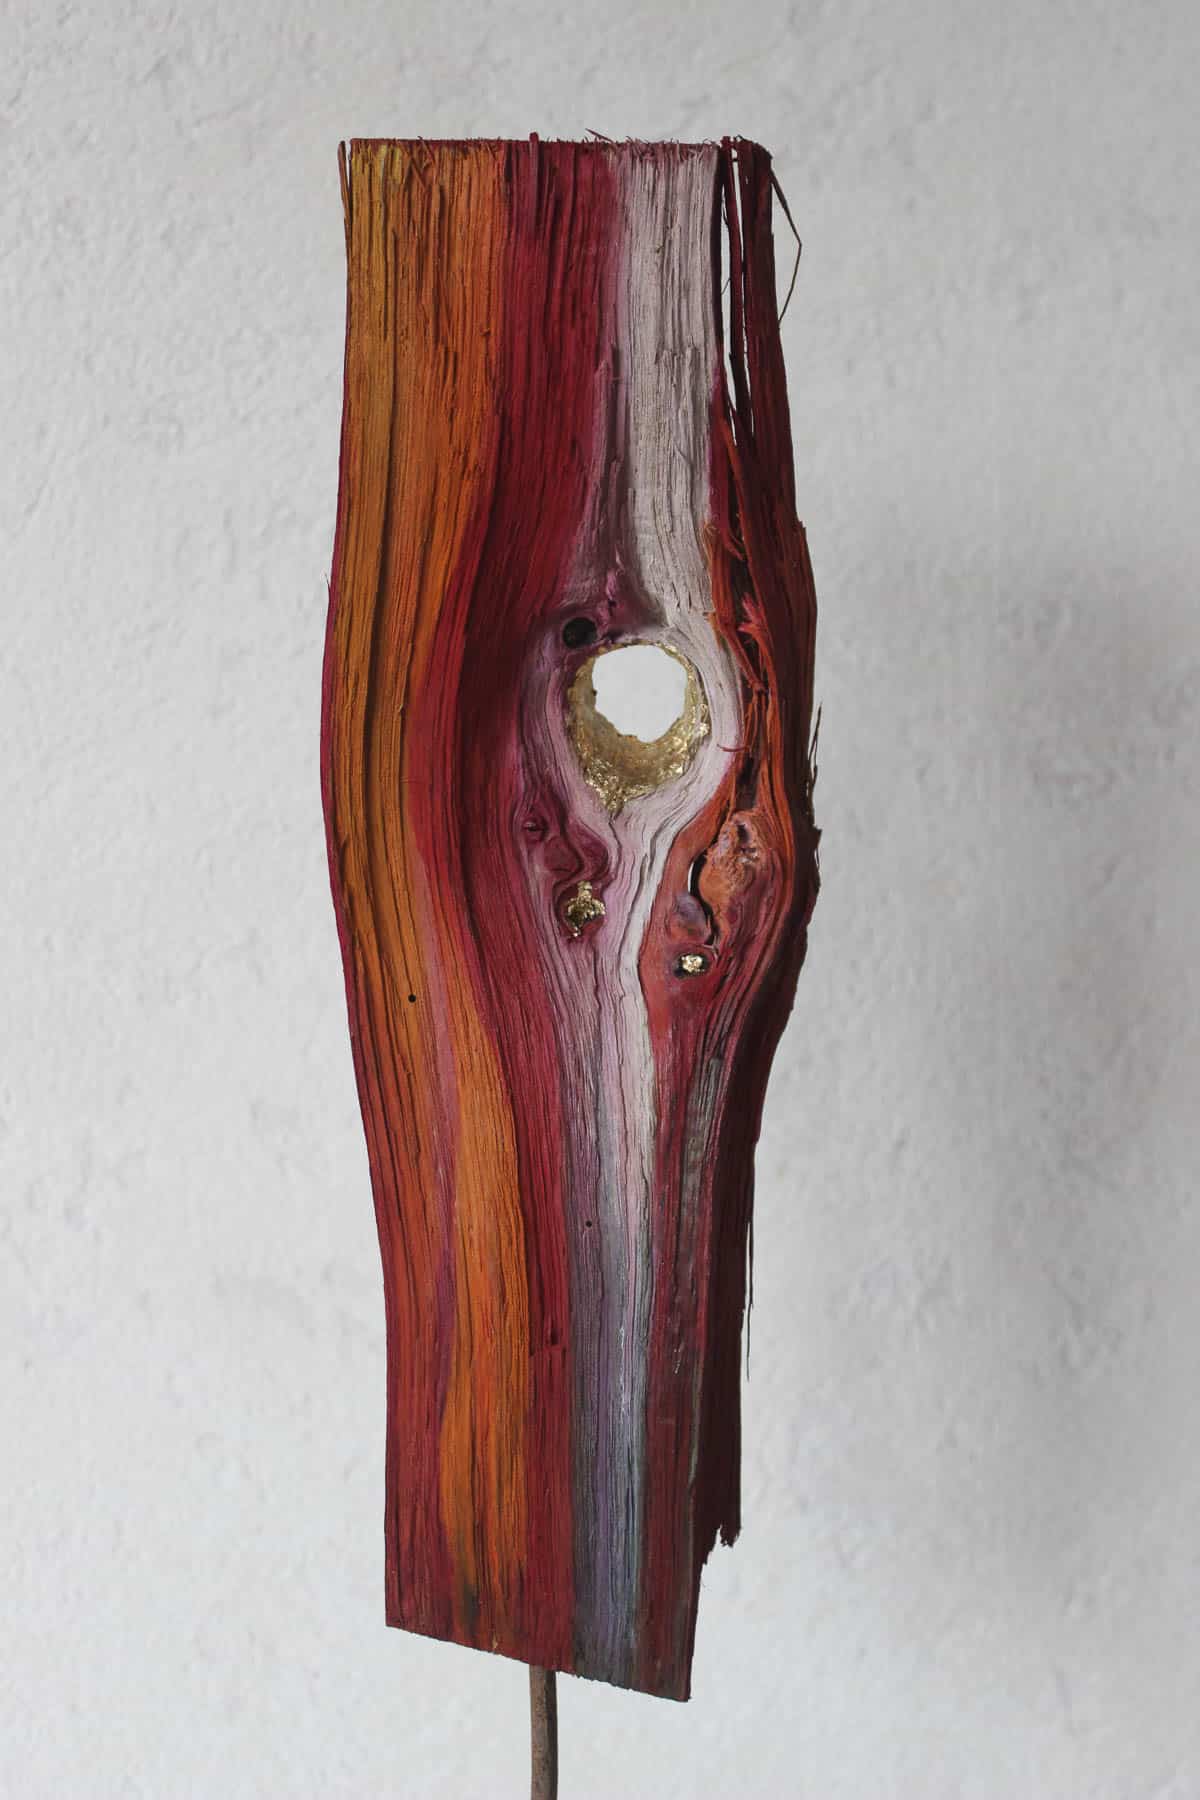 Objekt ohne Titel (Vorderansicht) farbiges Holz auf Speckstein Privatbesitz